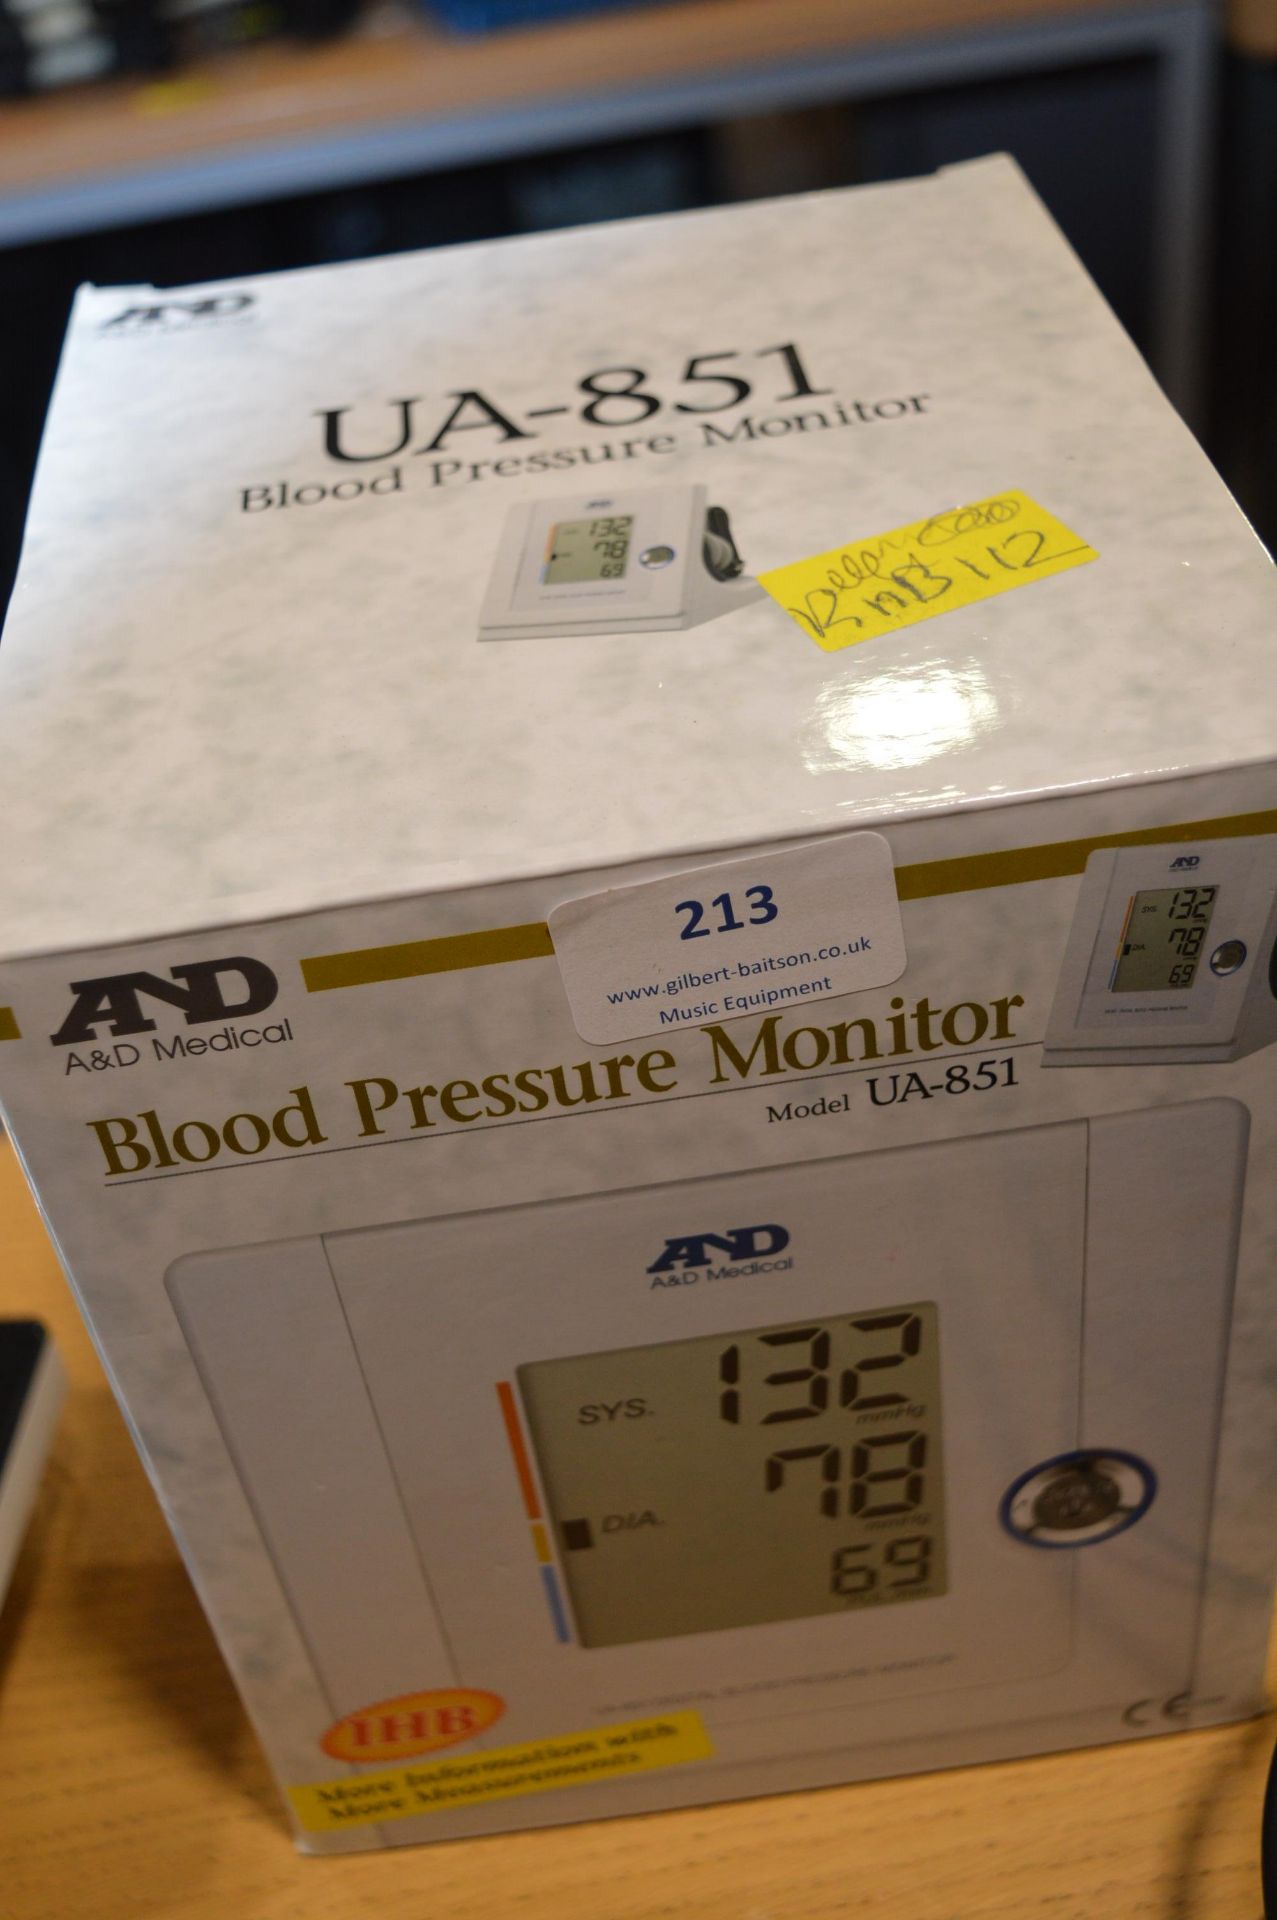 *AND Blood Pressure Monitor Model: UA-851